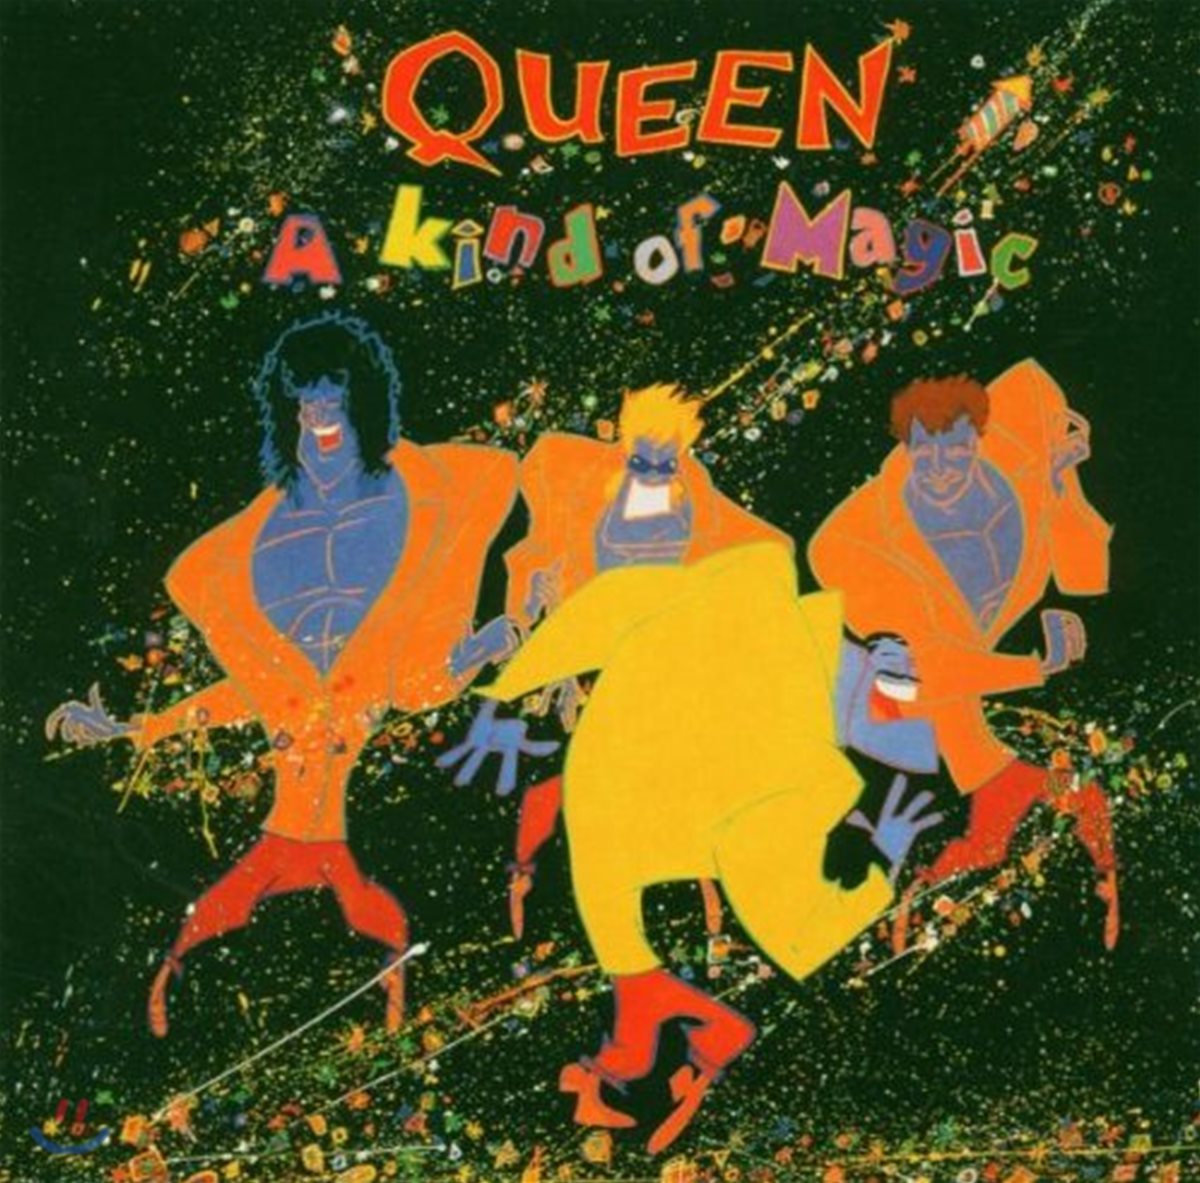 Queen - Kind Of Magic [LP 미니어쳐 CD]